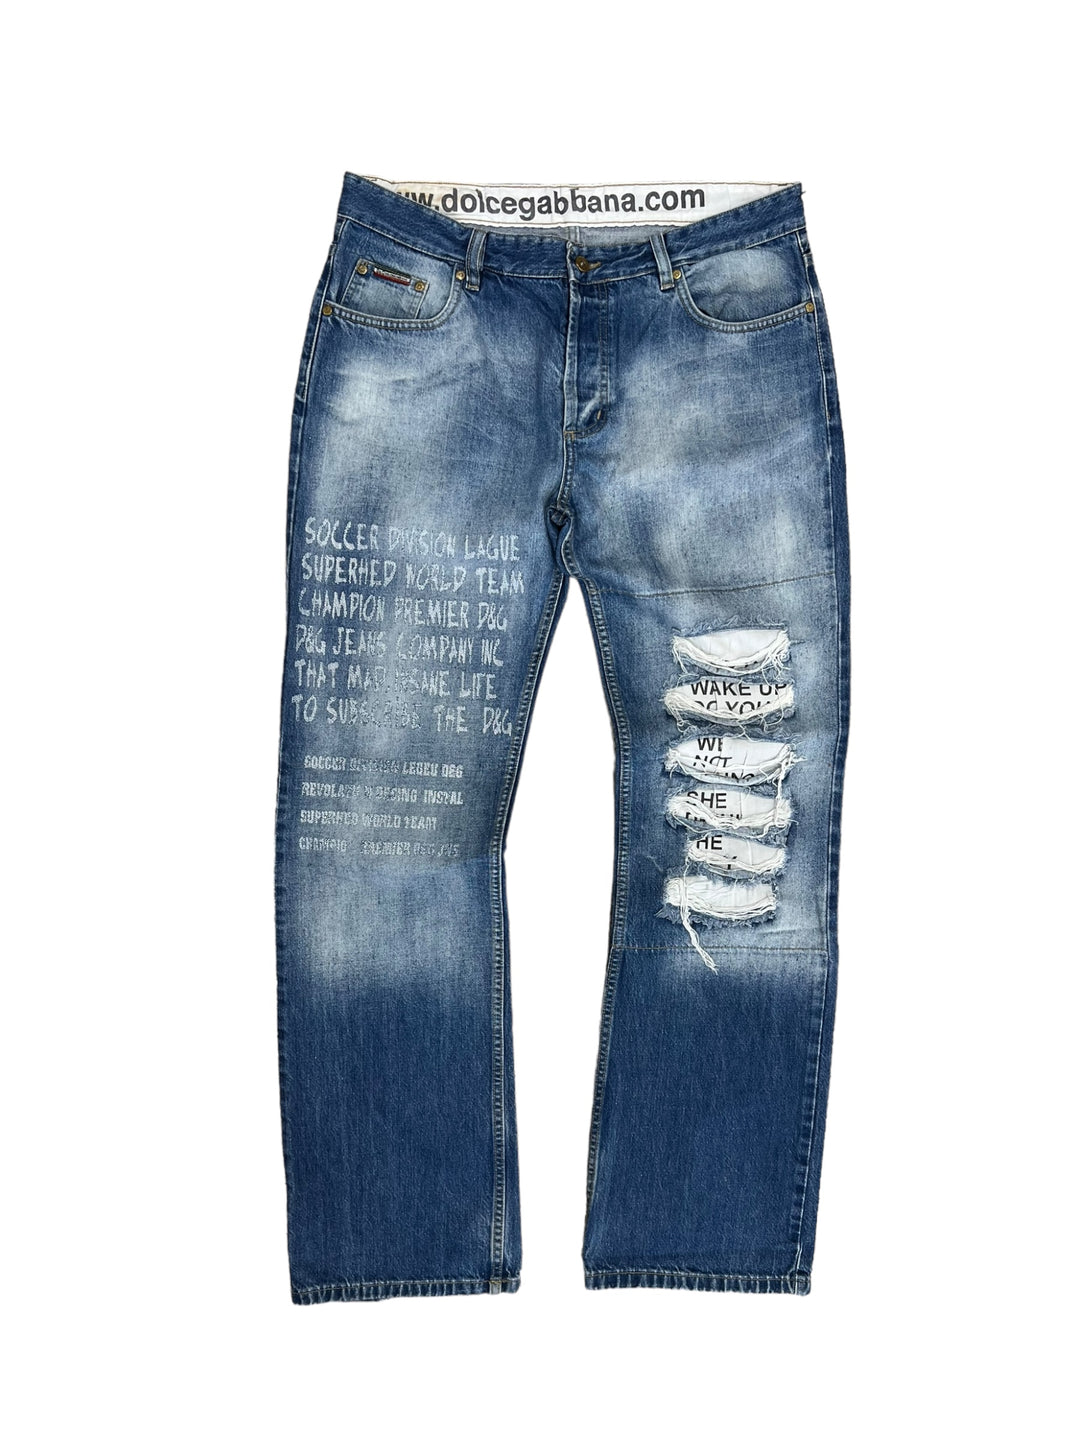 Dolce & Gabbana vintage jeans men’s Large(36)